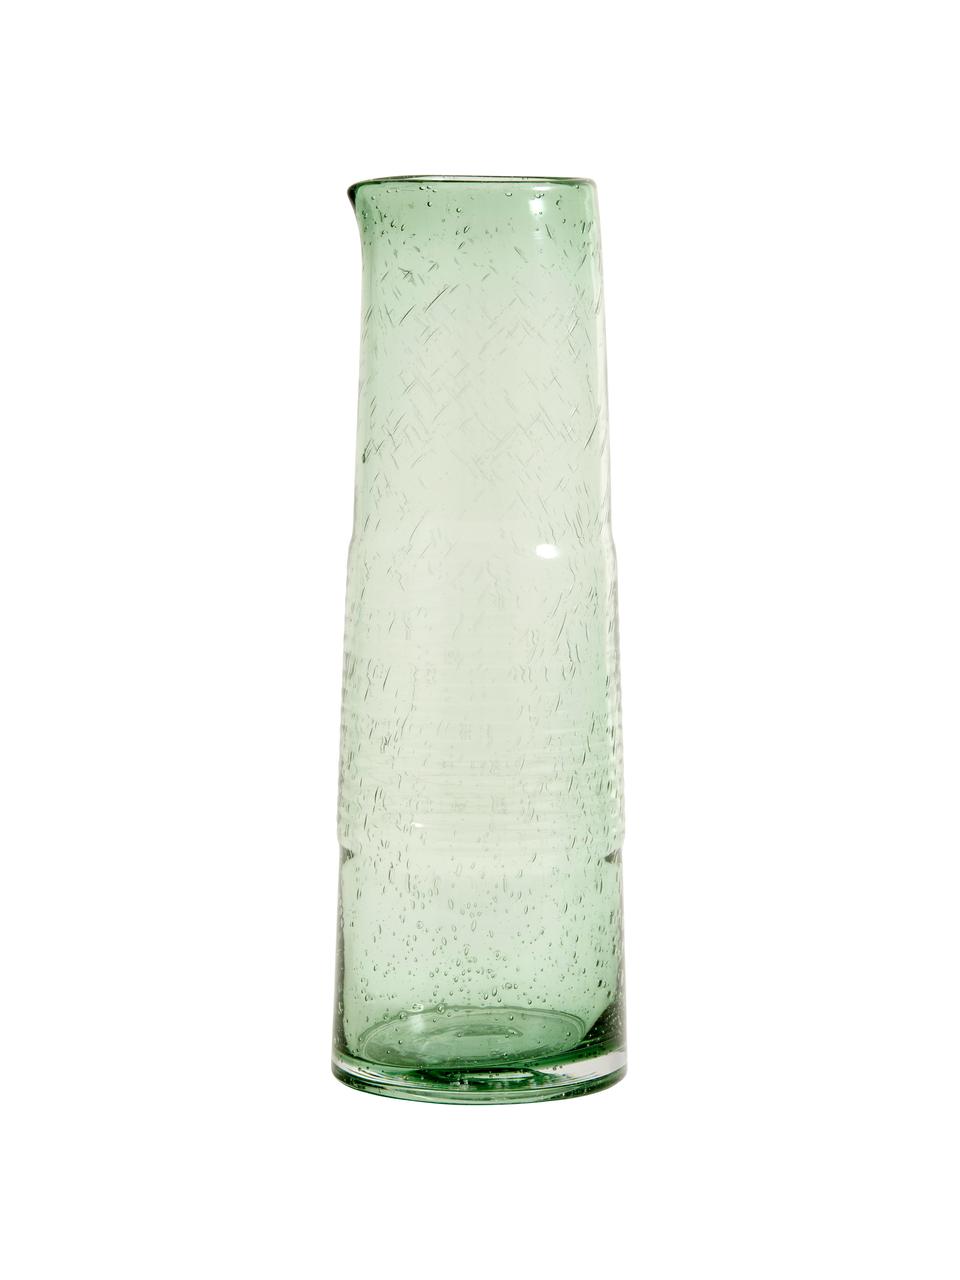 Karafka ze szkła dmuchanego Greenie, 1,3 l, Szkło z recyklingu, Zielony, Ø 8 x W 30 cm, 1,3 l